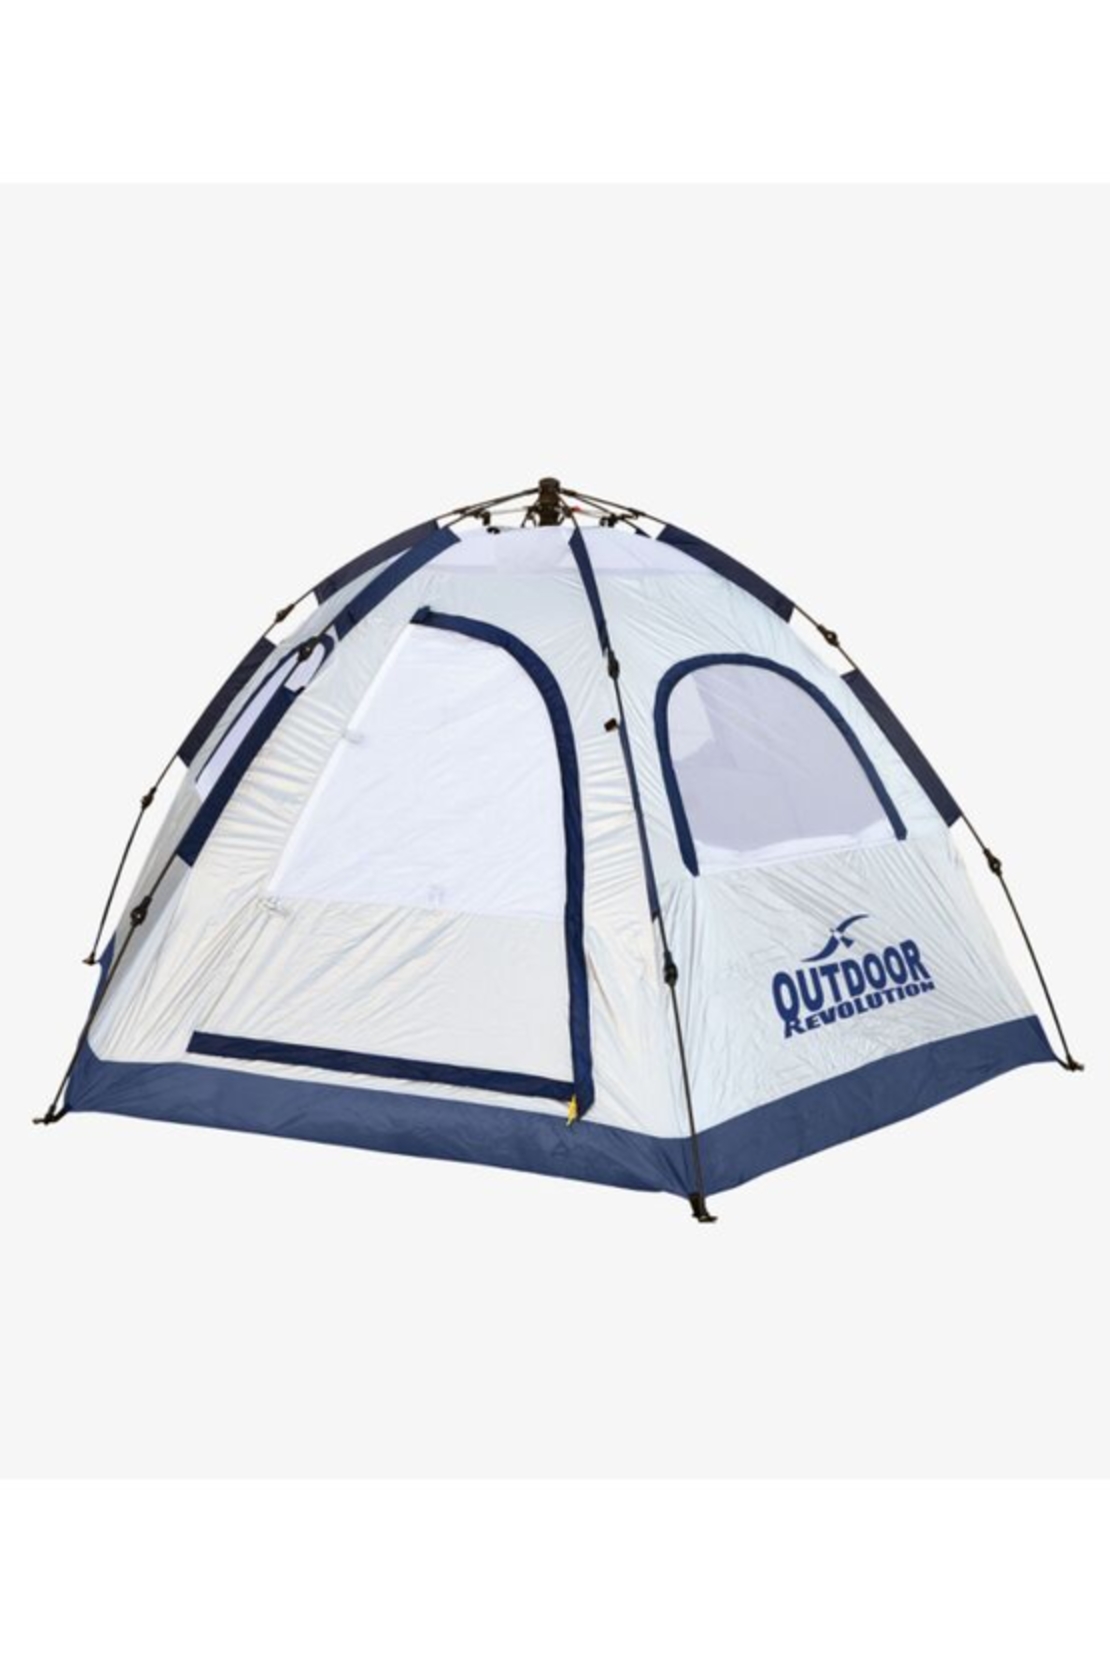 אוהל פתיחה מהירה משפחתי בסגנון איגלו - Outdoor Revolution.